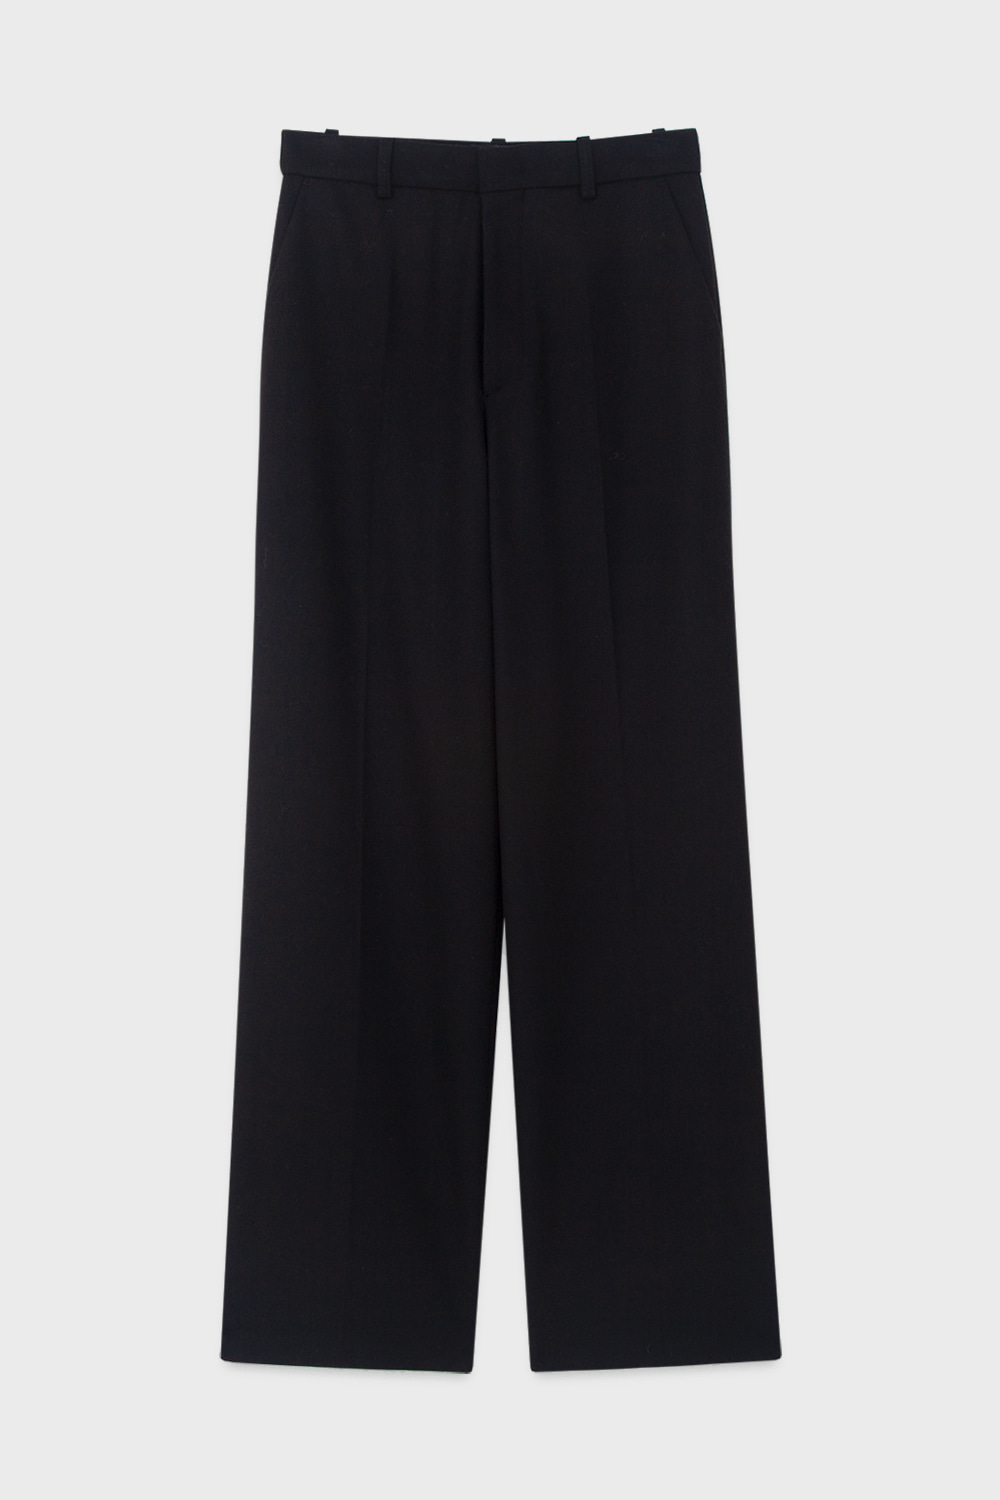 Wool-Flannel Trousers Black